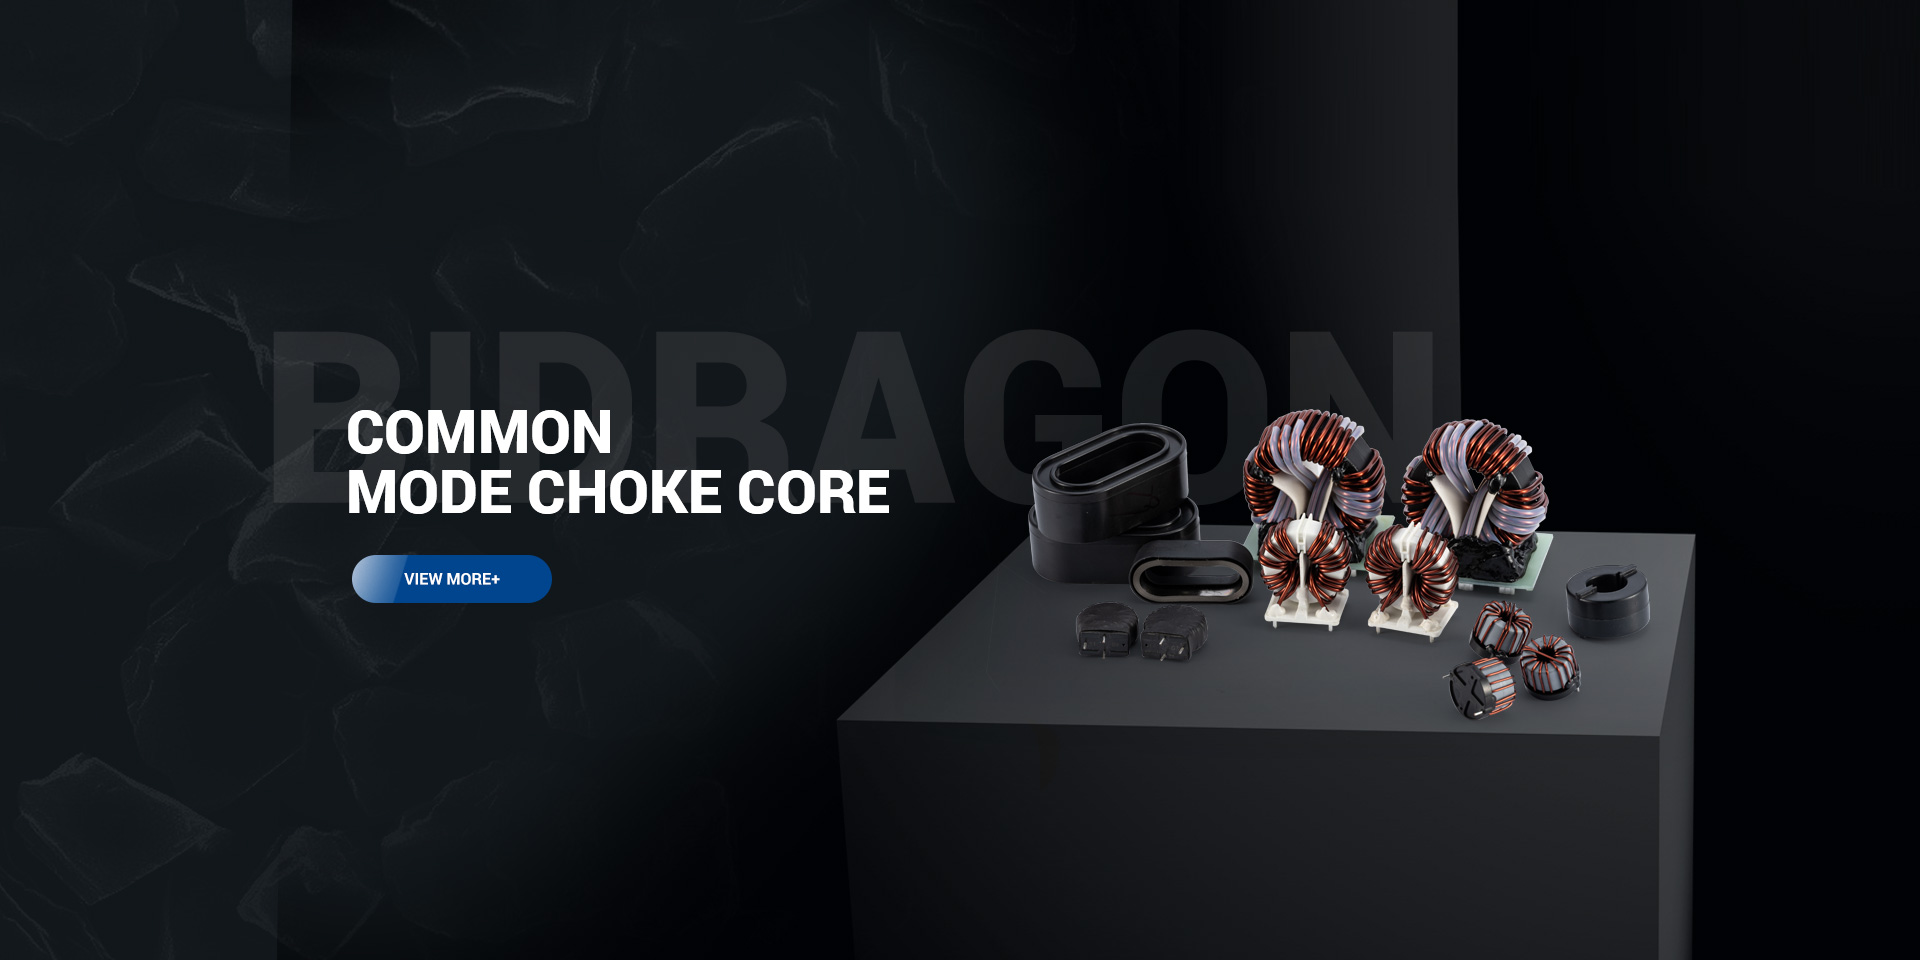 Common Mode Choke Core